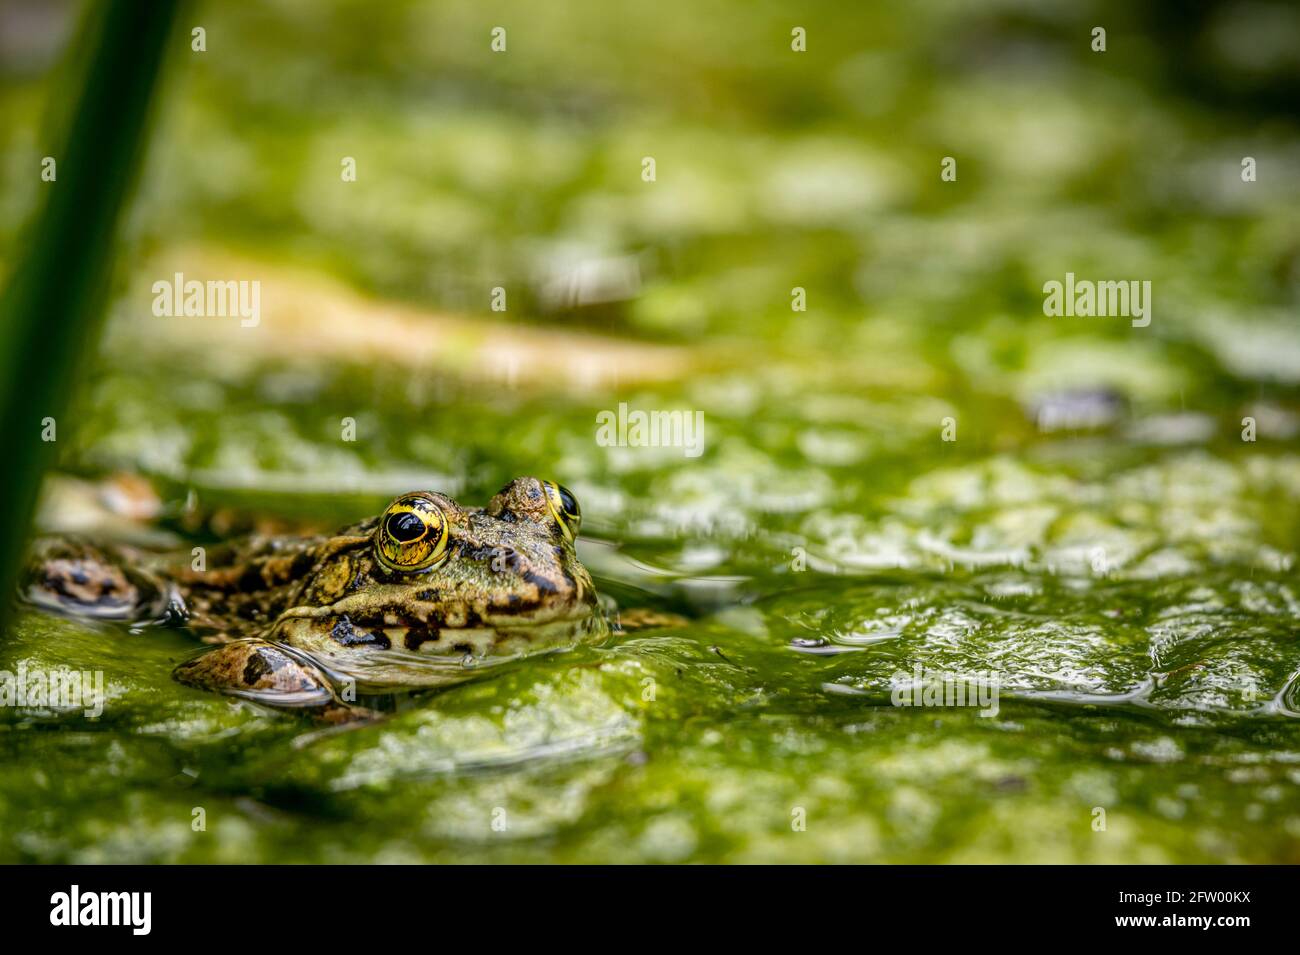 Ein Schwimmfrosch im Wasser in natürlichem Lebensraum. Pelophylax lessonae.  Europäischer Frosch. Schönheit in der Natur Stockfotografie - Alamy